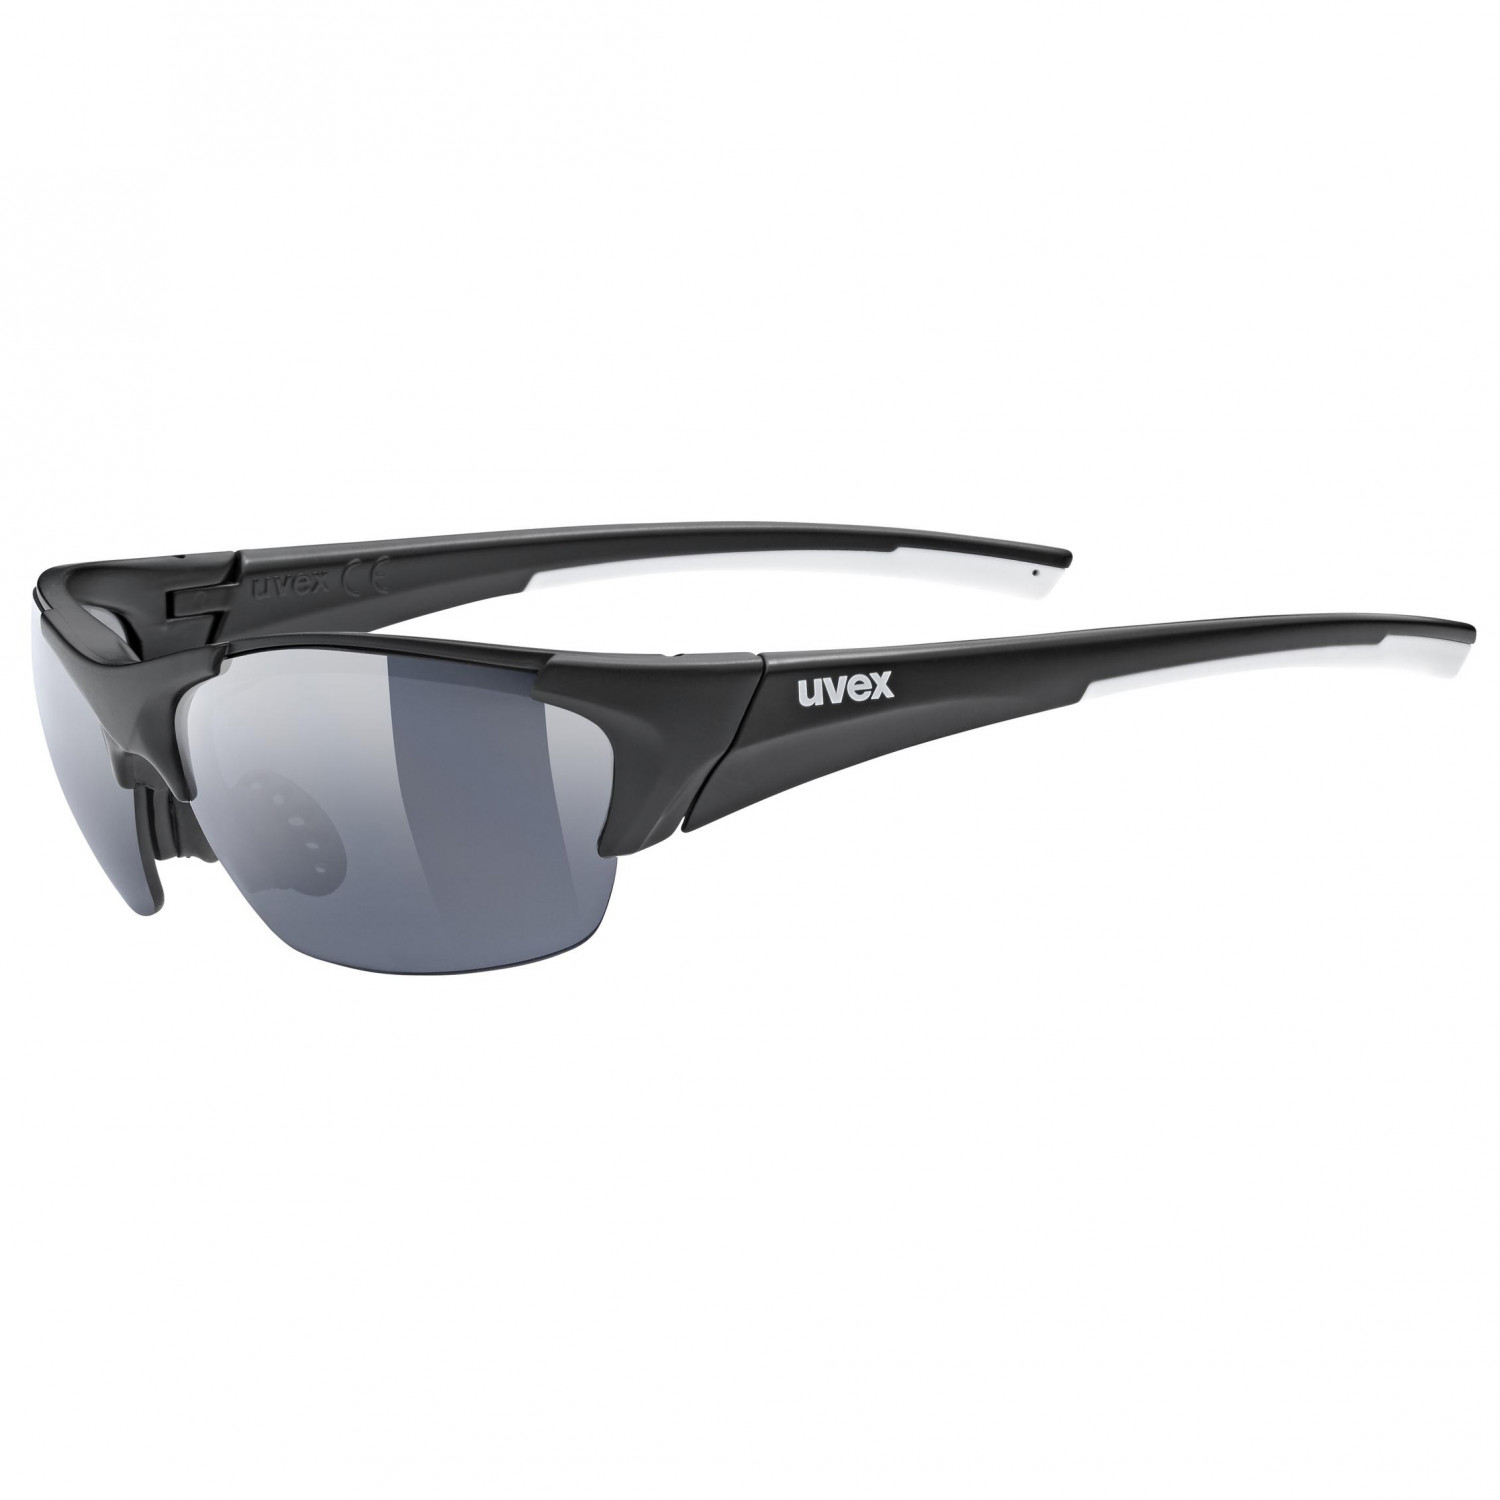 Велосипедные очки Uvex Blaze III Cat: 0+1+3, цвет Black Mat очки uvex 9161005 54 г blue black